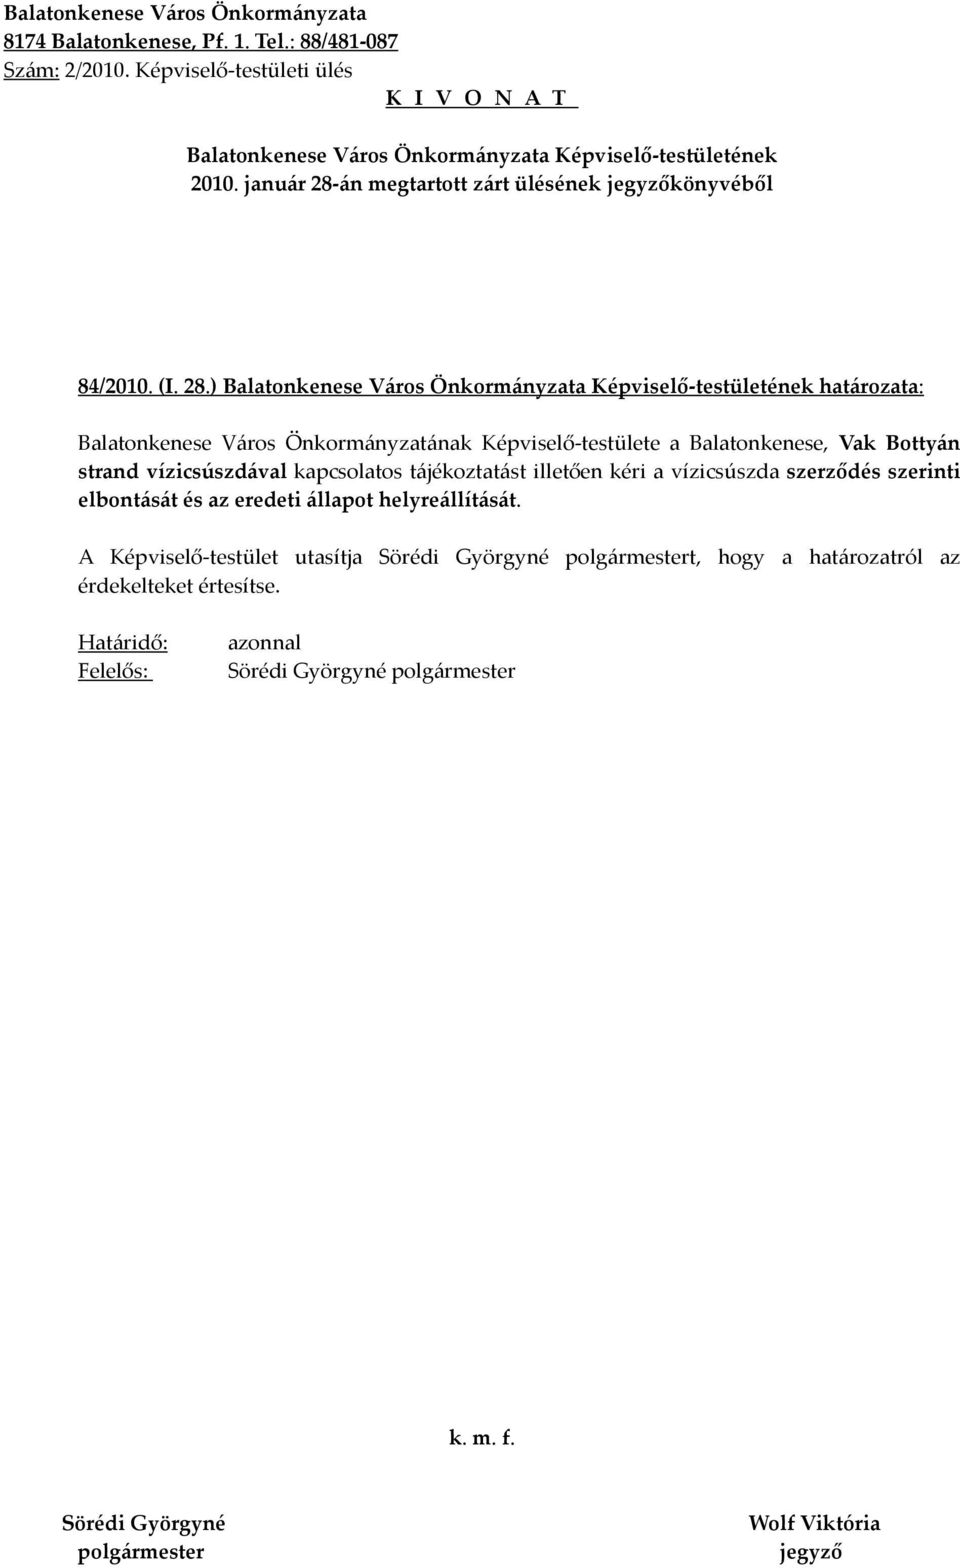 ) határozata: Balatonkenese Város Önkormányzatának Képviselő-testülete a Balatonkenese, Vak Bottyán